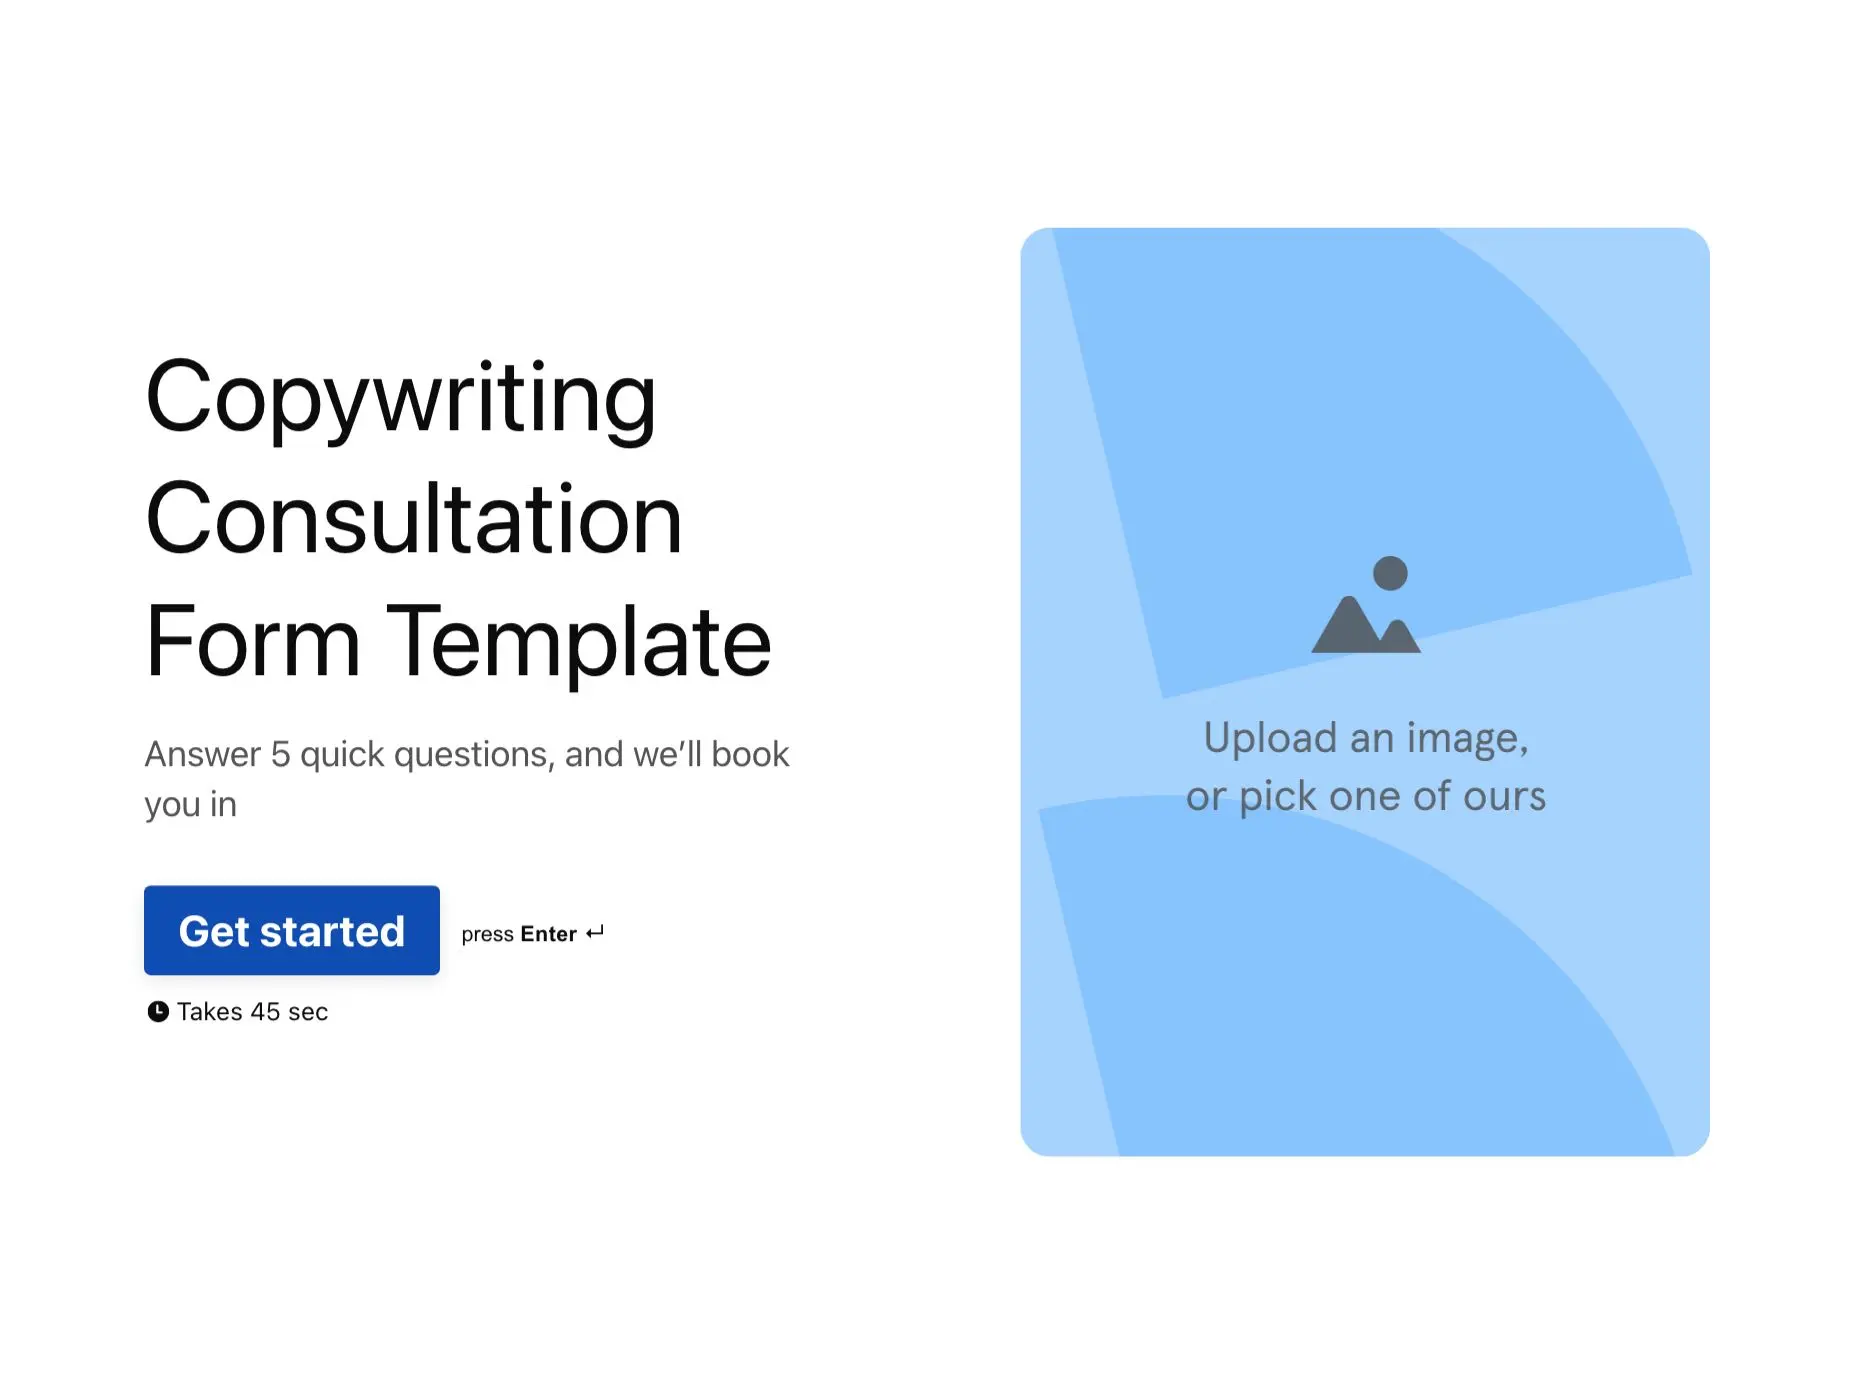 Copywriting Consultation Form Template Hero